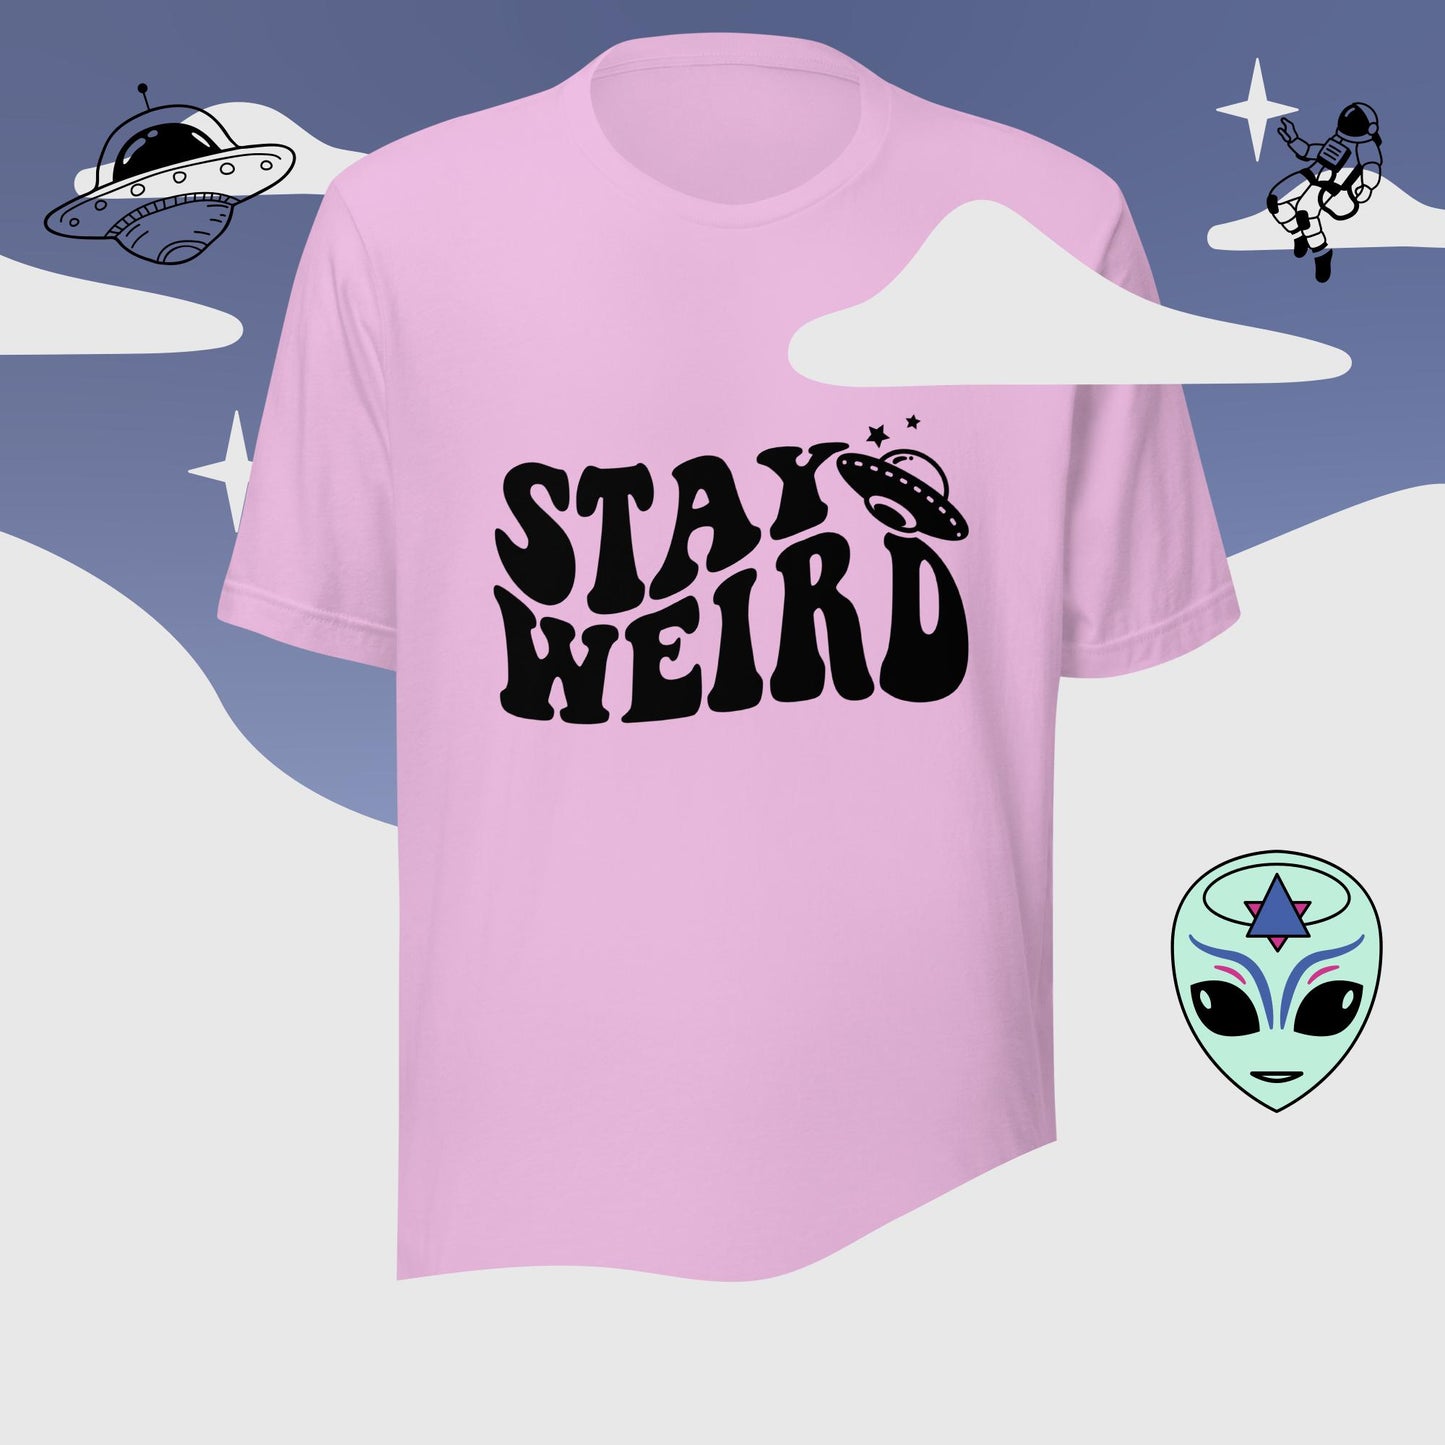 Stay Weird t-shirt